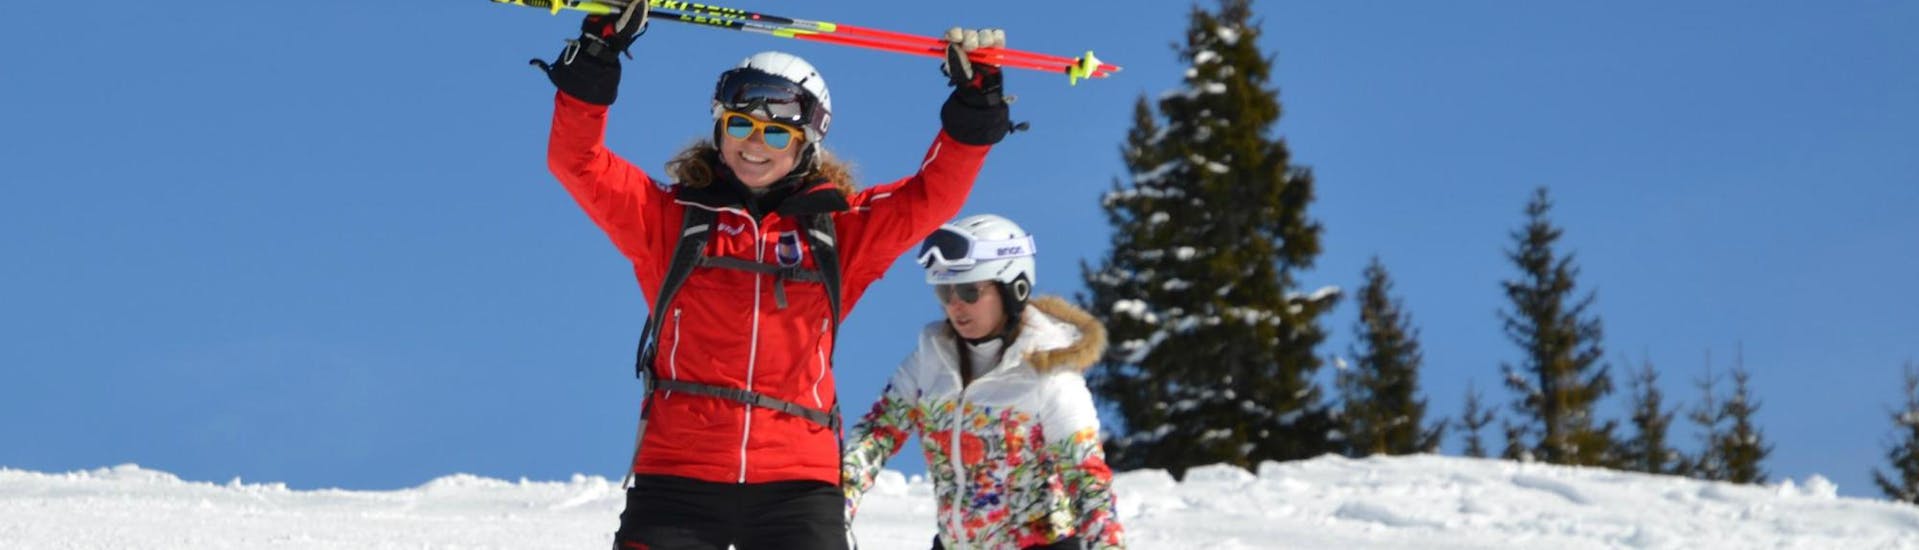 Bij de skilessen voor volwassenen - beginner laat de skileraar van de skischool Skischule Kitzbühel Rote Teufel een beginner de beginselen van sneeuwploegen zien.